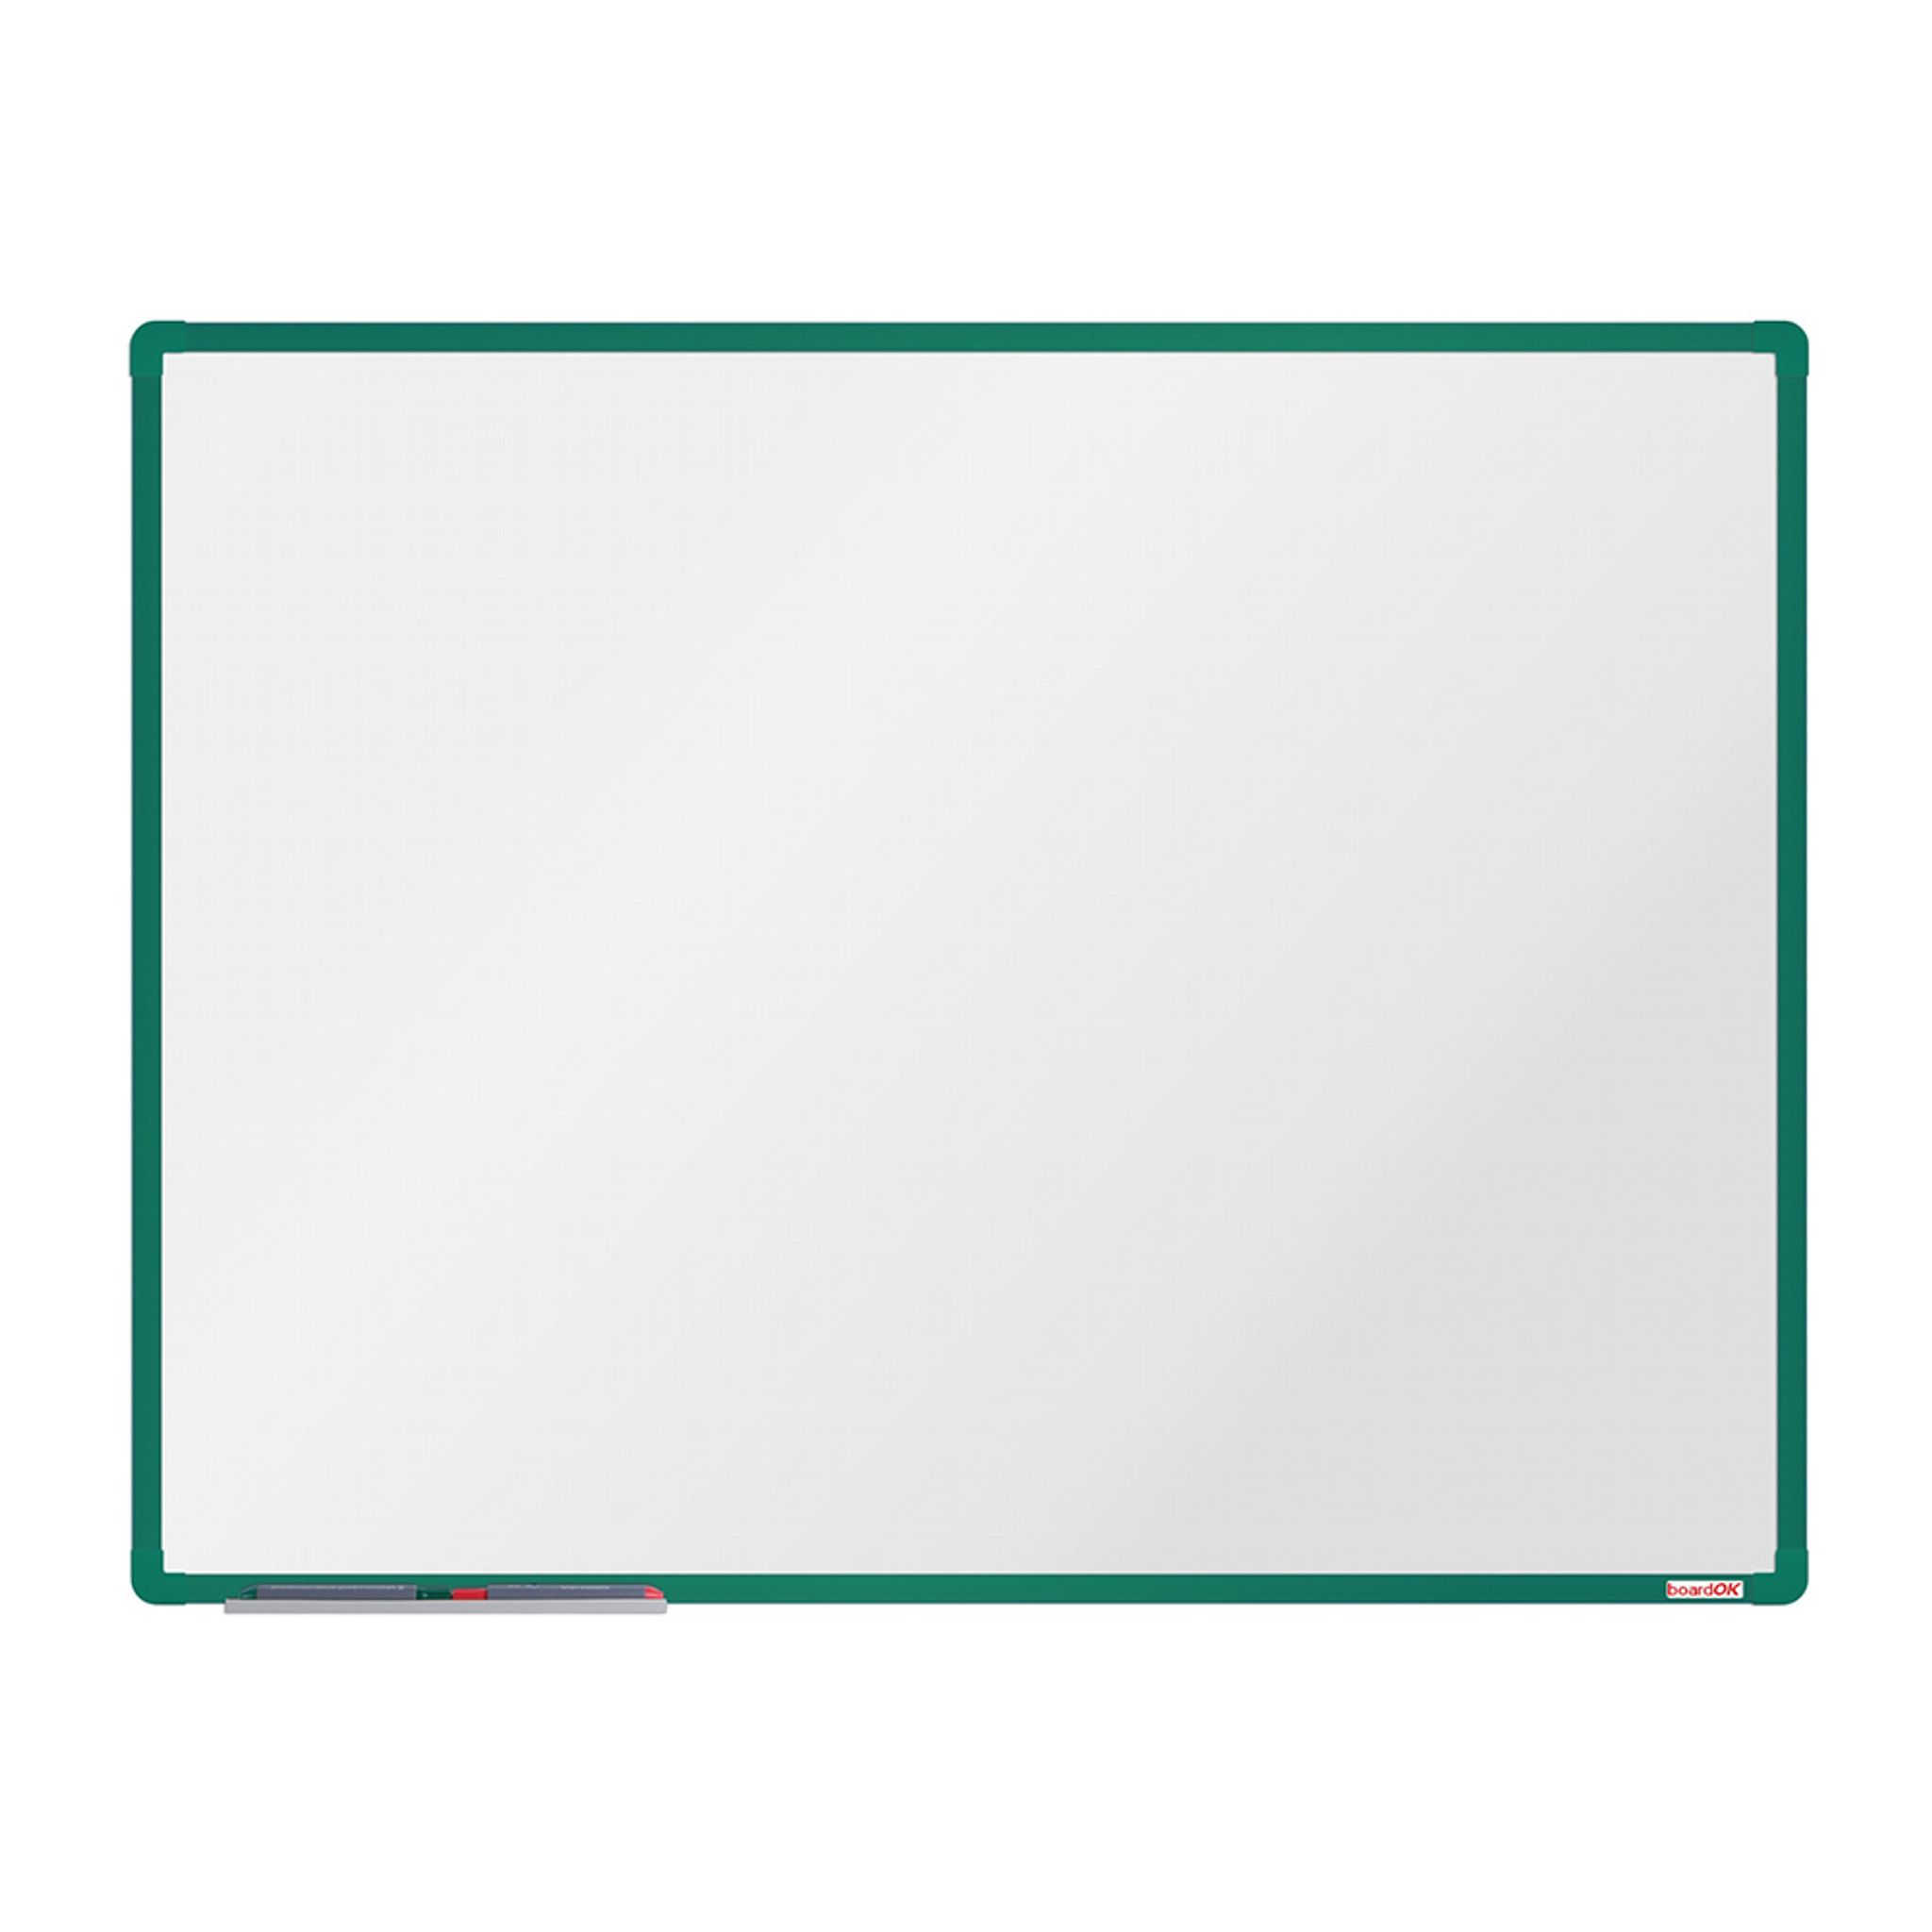 Biała magnetyczna tablica do pisania boardOK 1200 x 900 mm, zielona rama